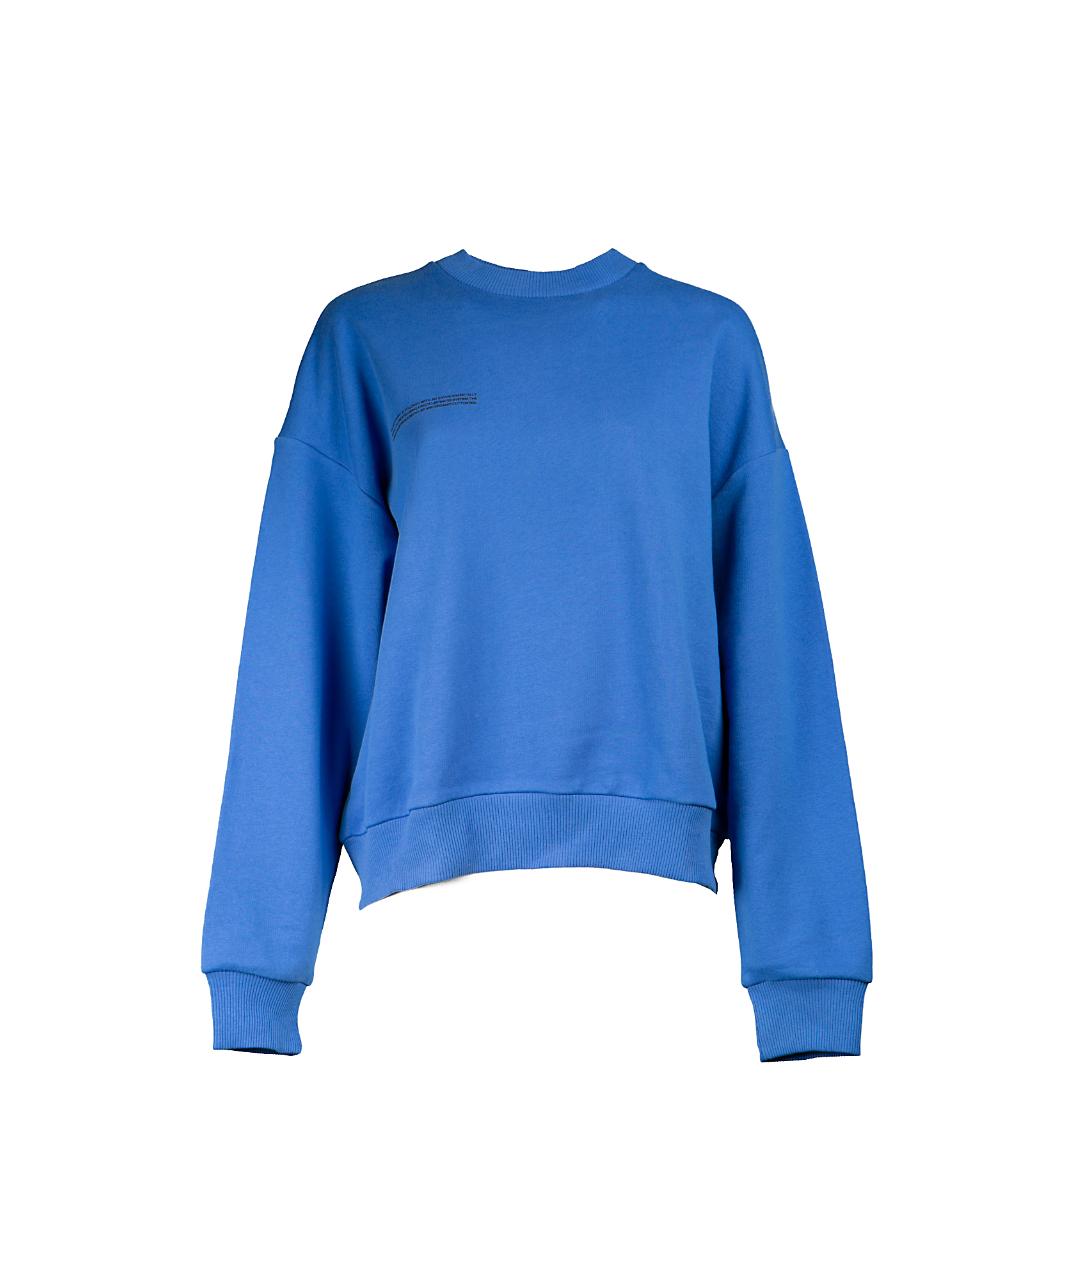 THE PANGAIA Синий джемпер / свитер, фото 1